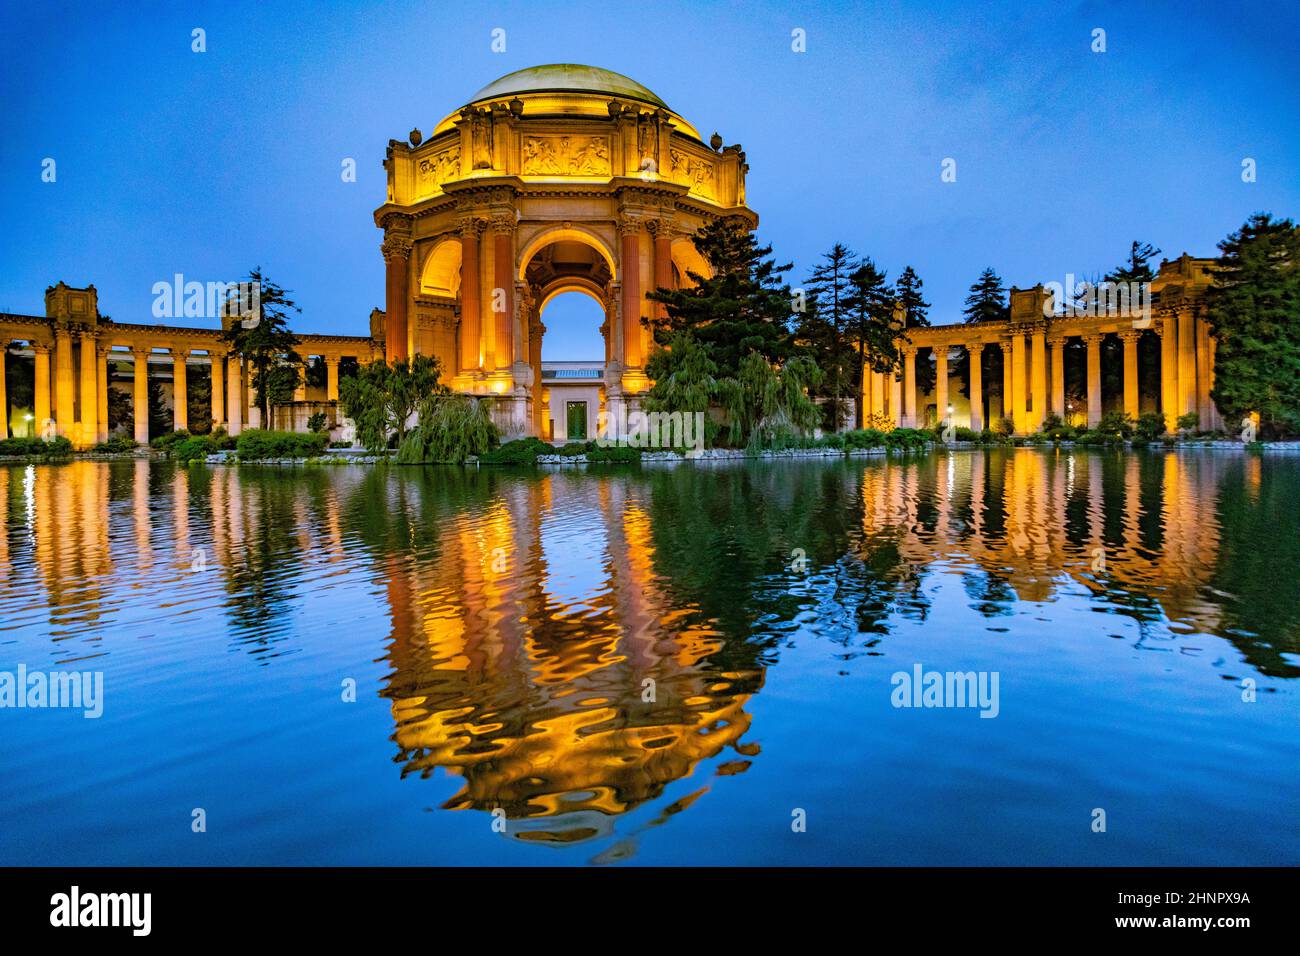 Le Palais des Beaux-Arts dans le quartier de la Marina de nuit, San Francisco Banque D'Images